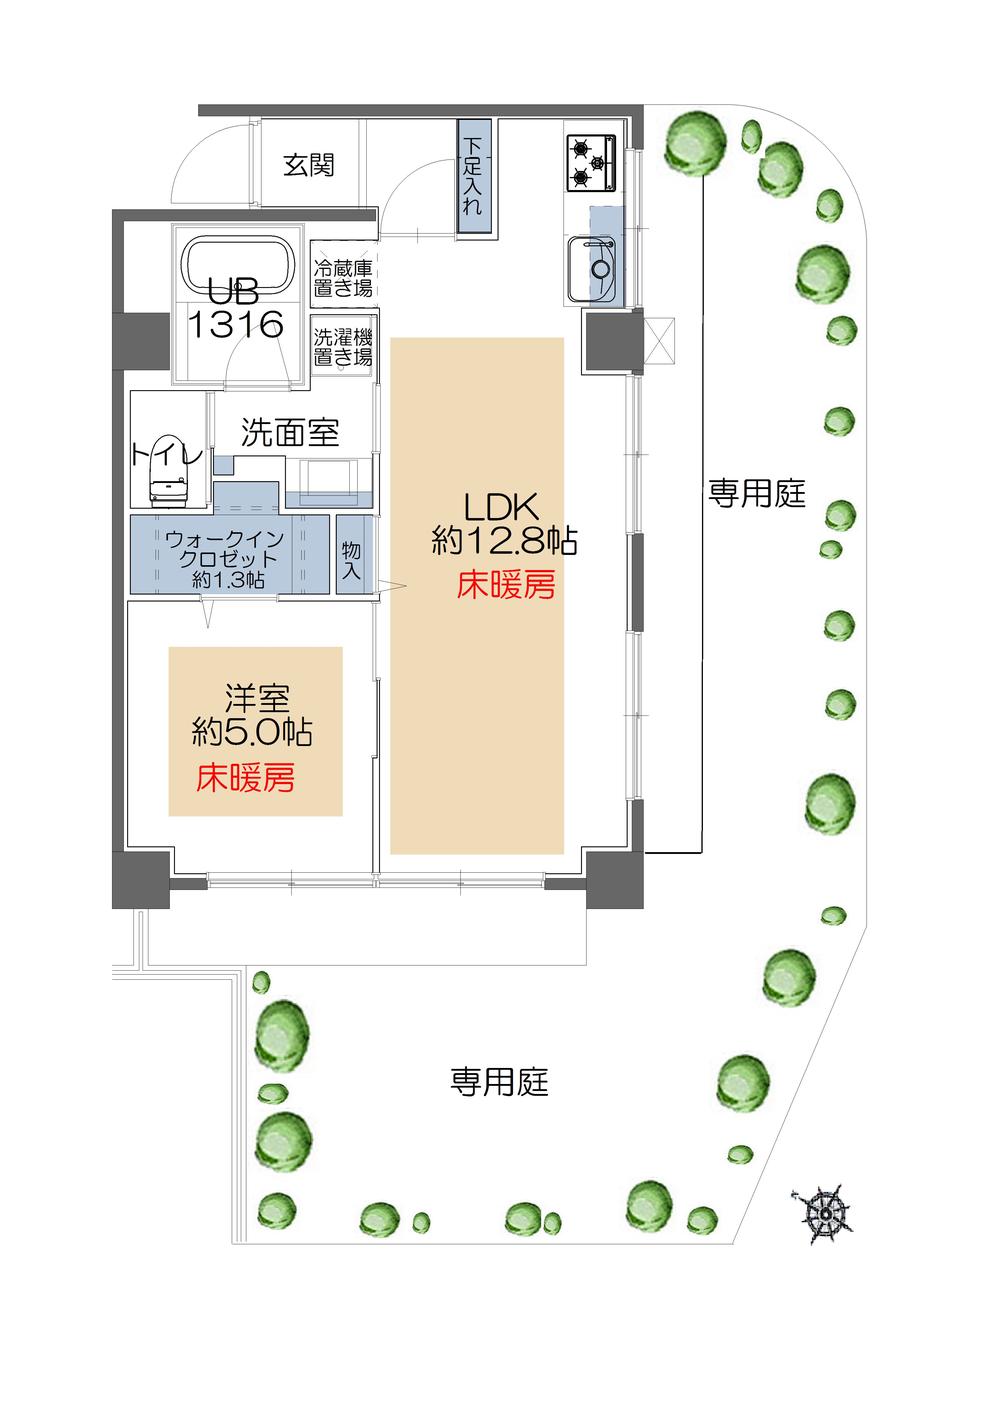 Floor plan. 1LDK, Price 38,300,000 yen, Occupied area 43.62 sq m